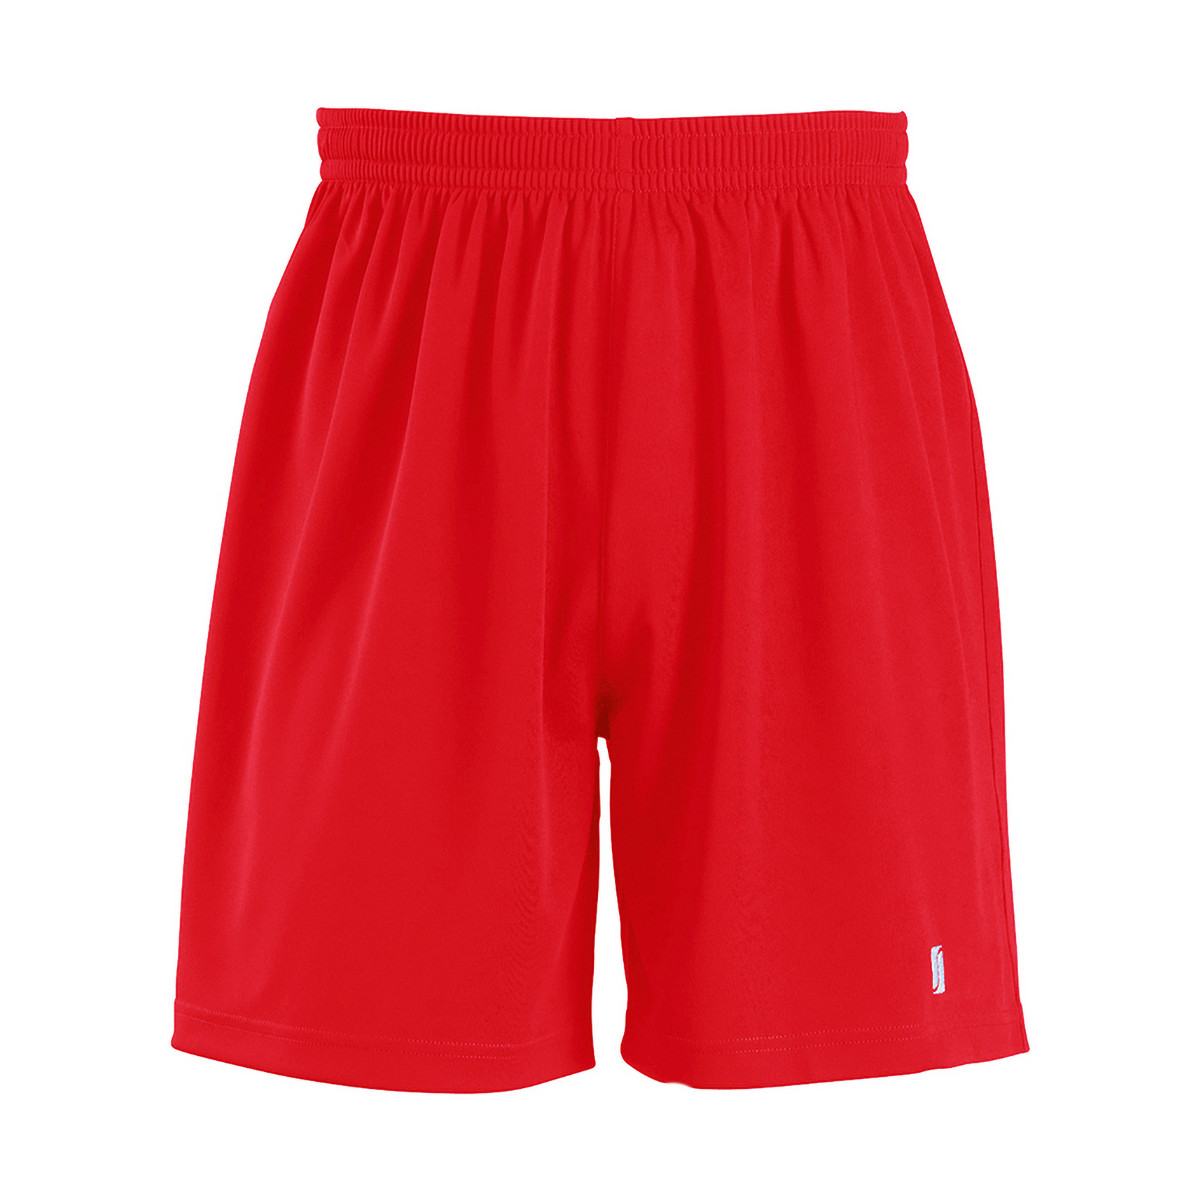 textil Hombre Shorts / Bermudas Sols San Siro Rojo